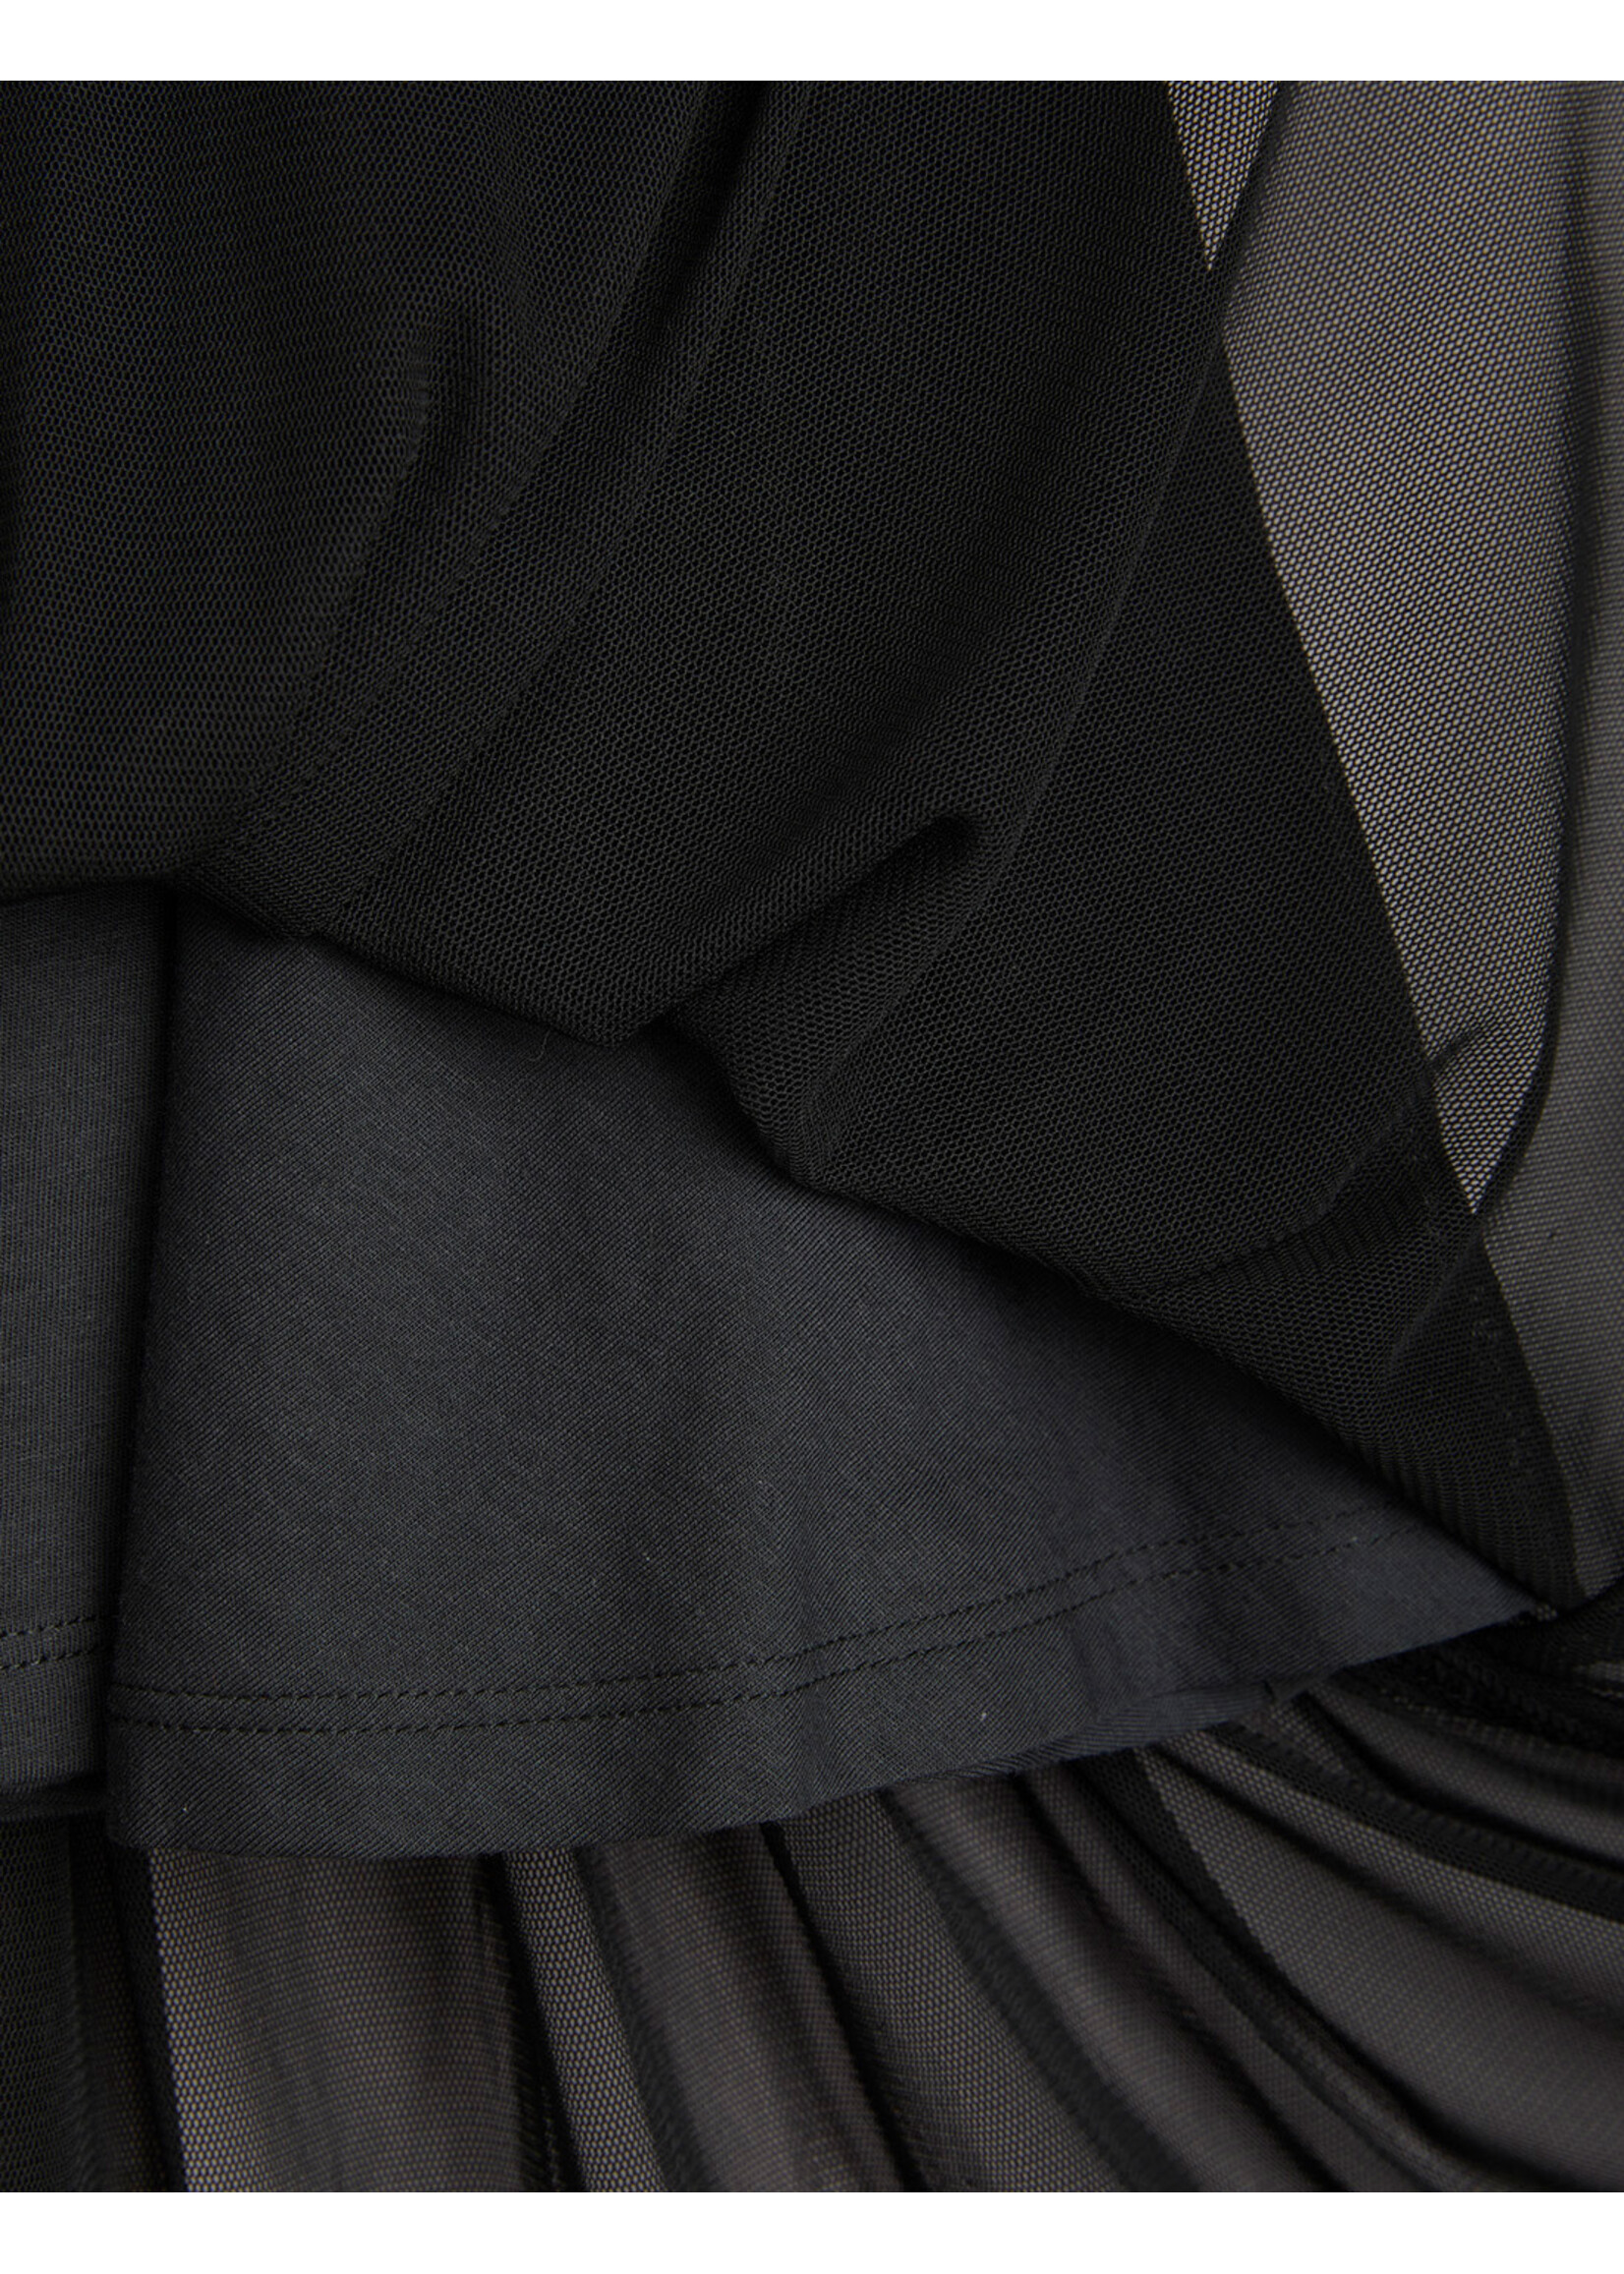 MINI RODINI Bat flower tulle skirt - Chapter 1 - Black